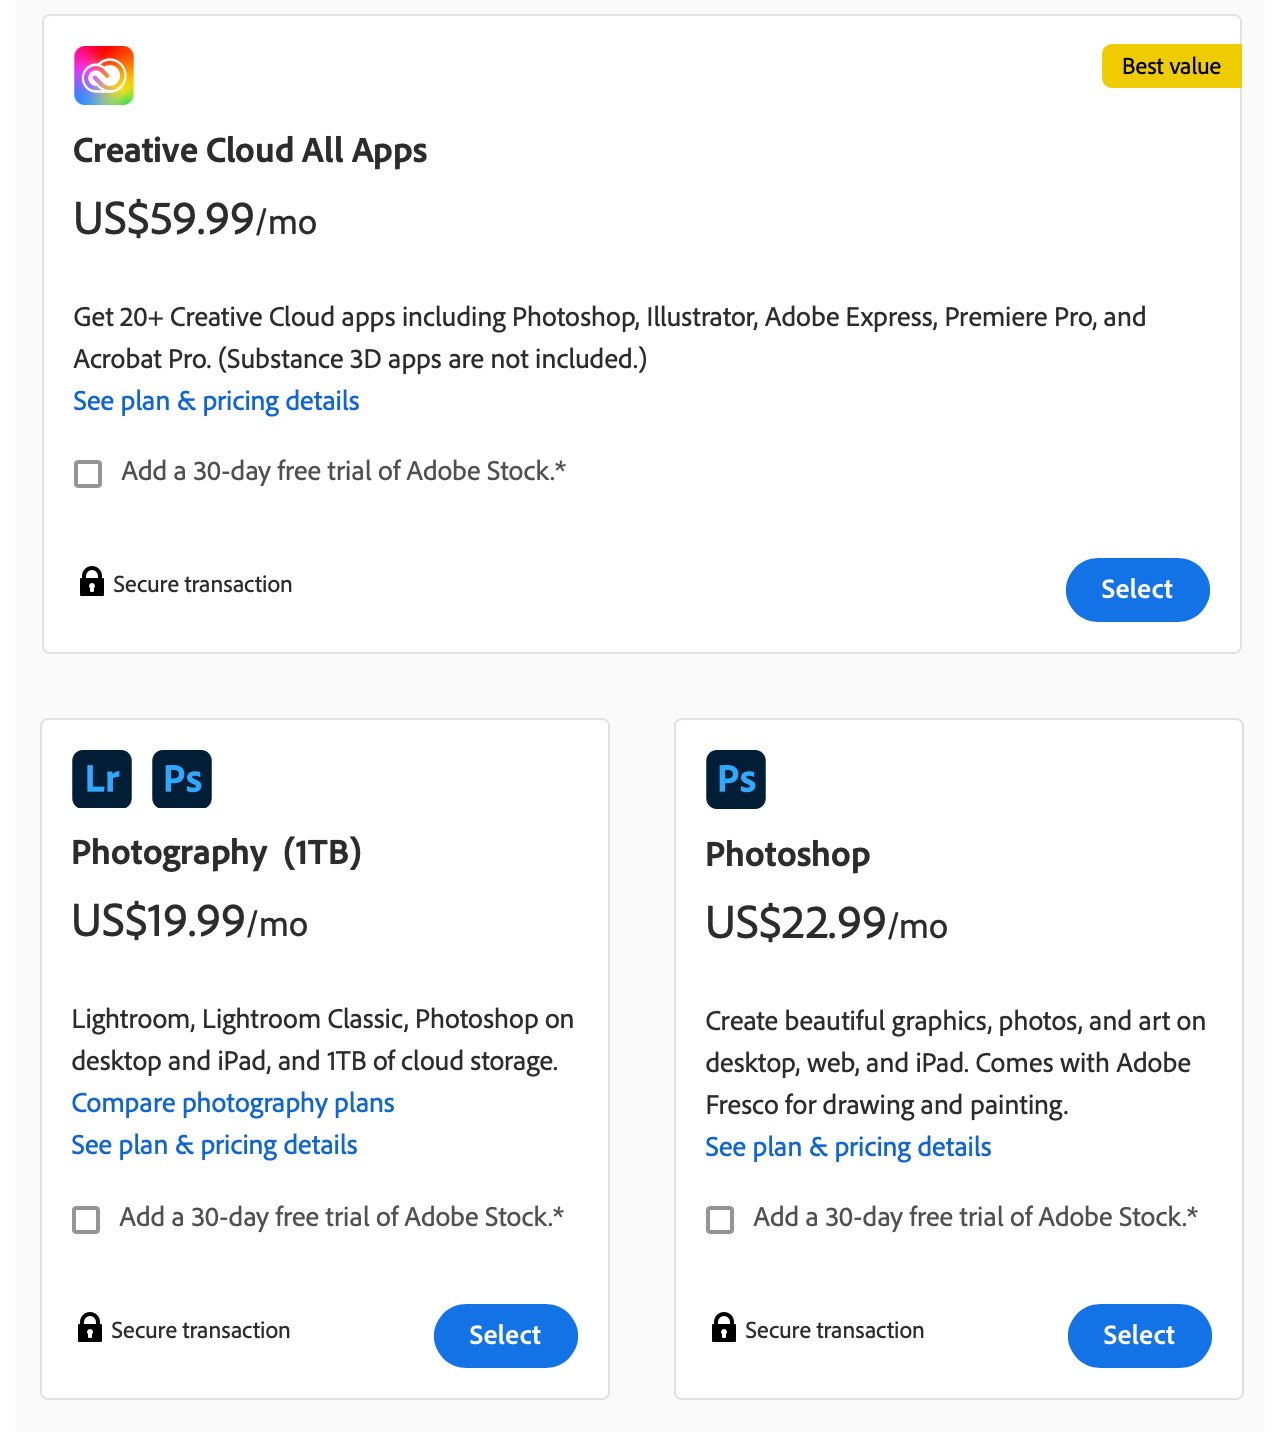 Снимок экрана с планами подписки Adobe Creative Cloud с ценами и краткими описаниями для всех приложений, фотографий и отдельных пакетов Photoshop.